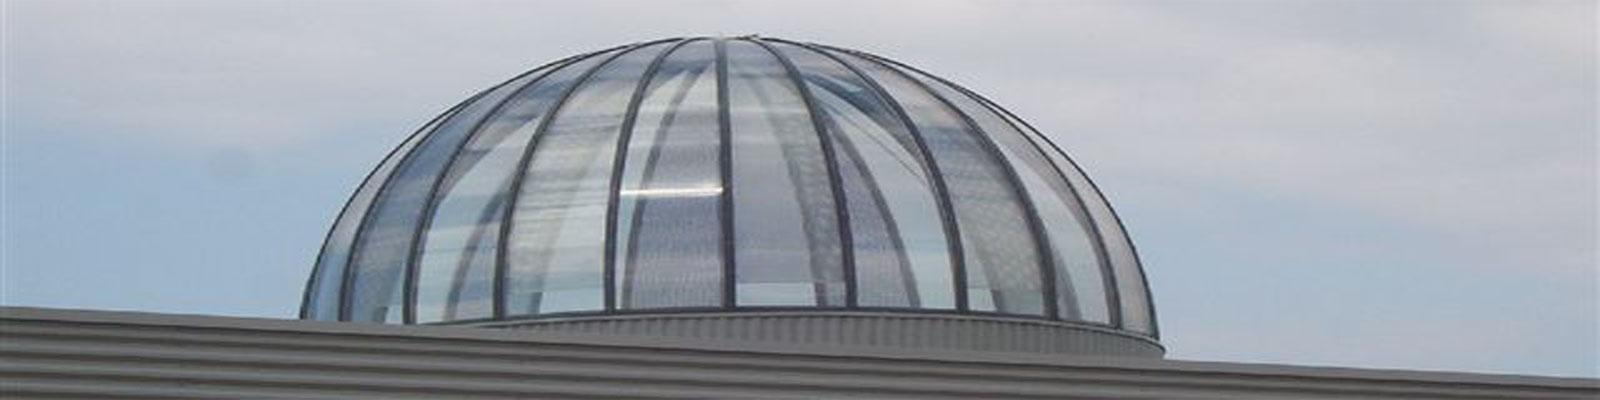 Dome3